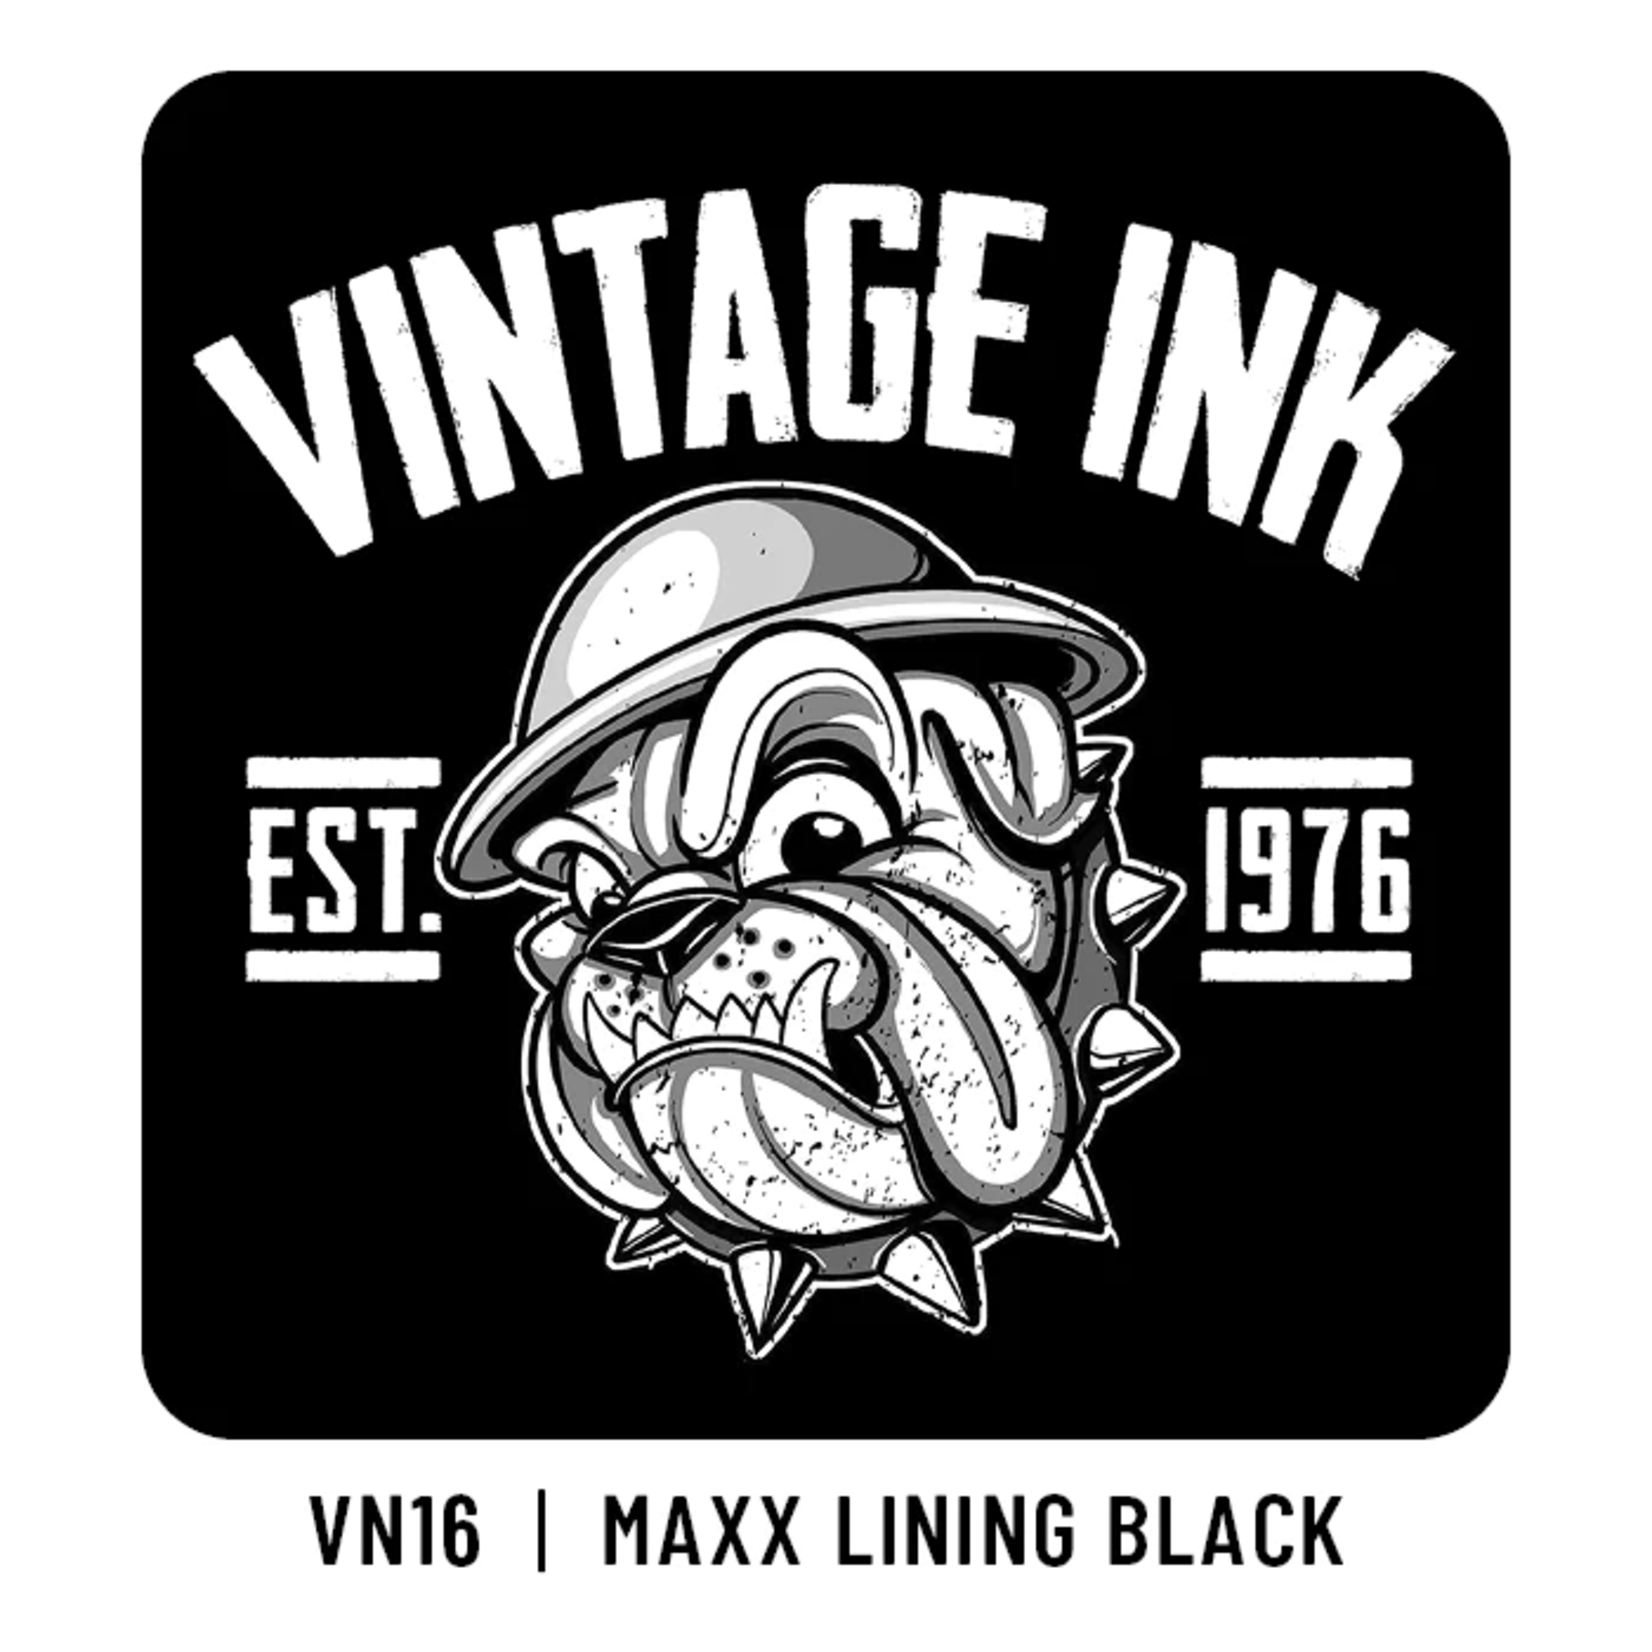 ETERNAL INK VINTAGE INK MAXX LINING BLACK 1OZ